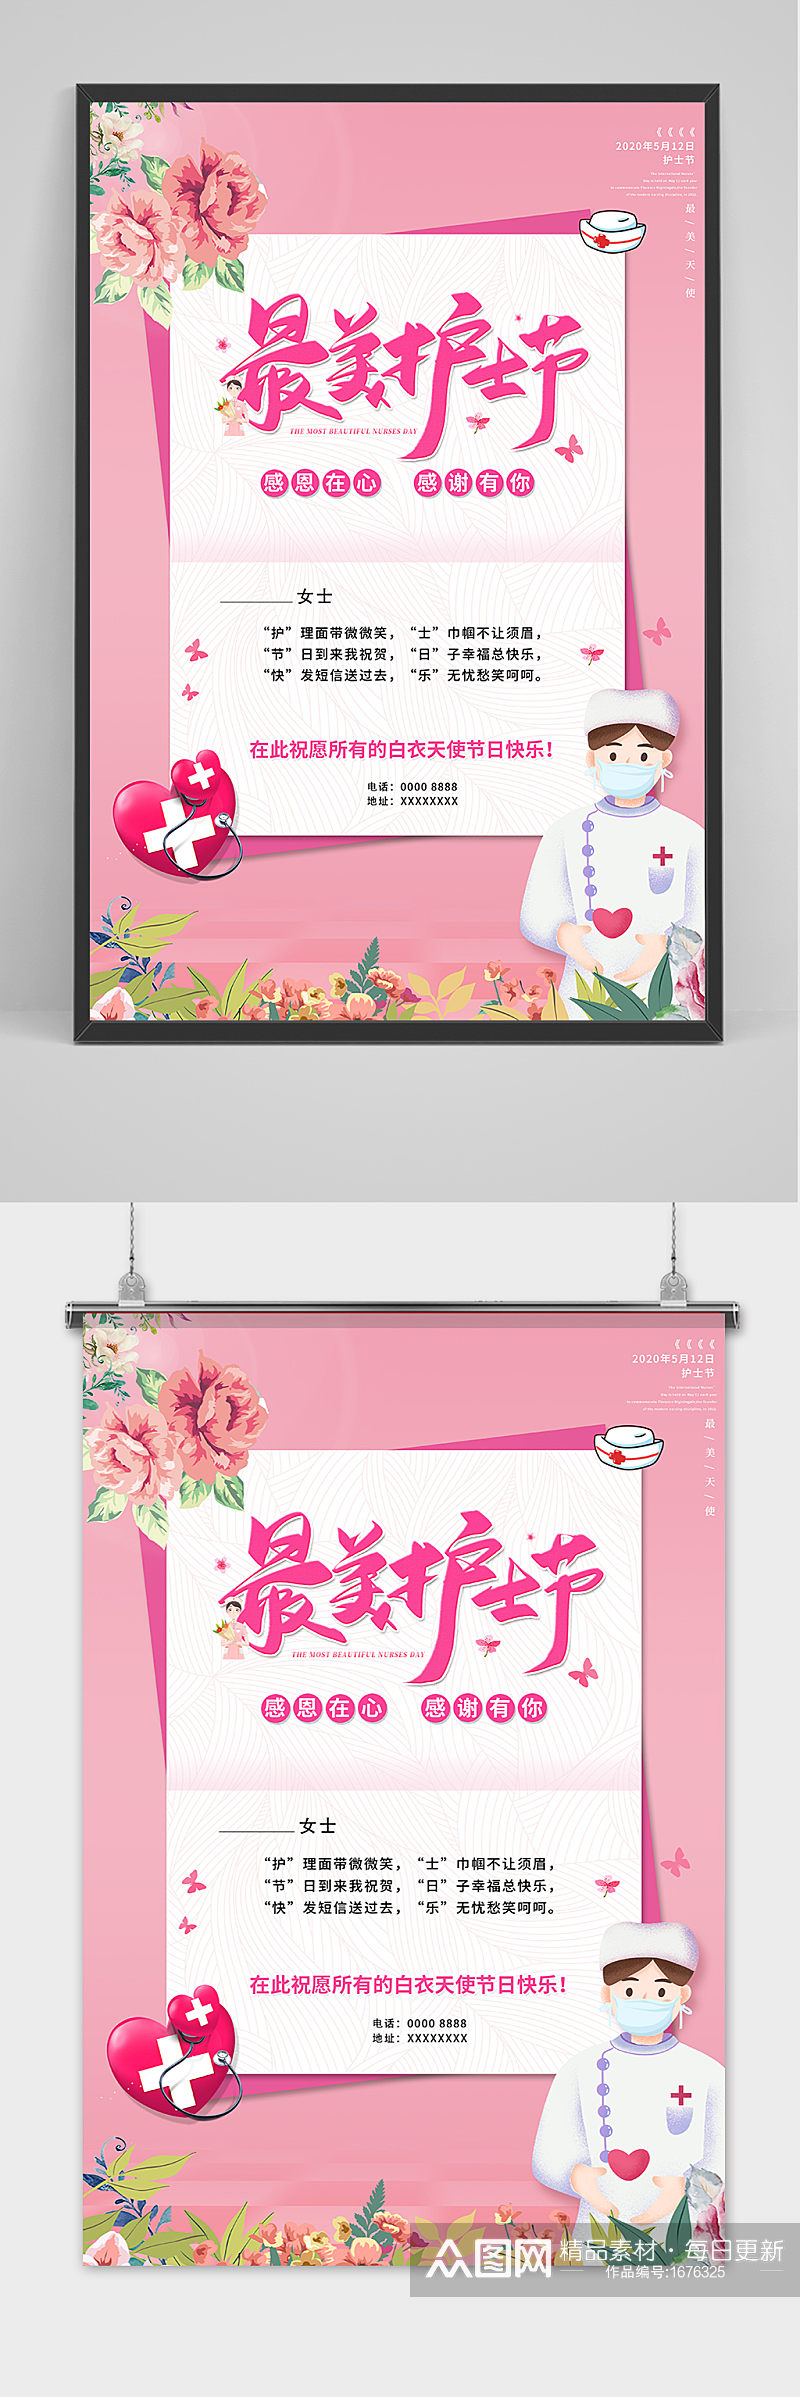 粉色简约大气国际护士节宣传海报素材